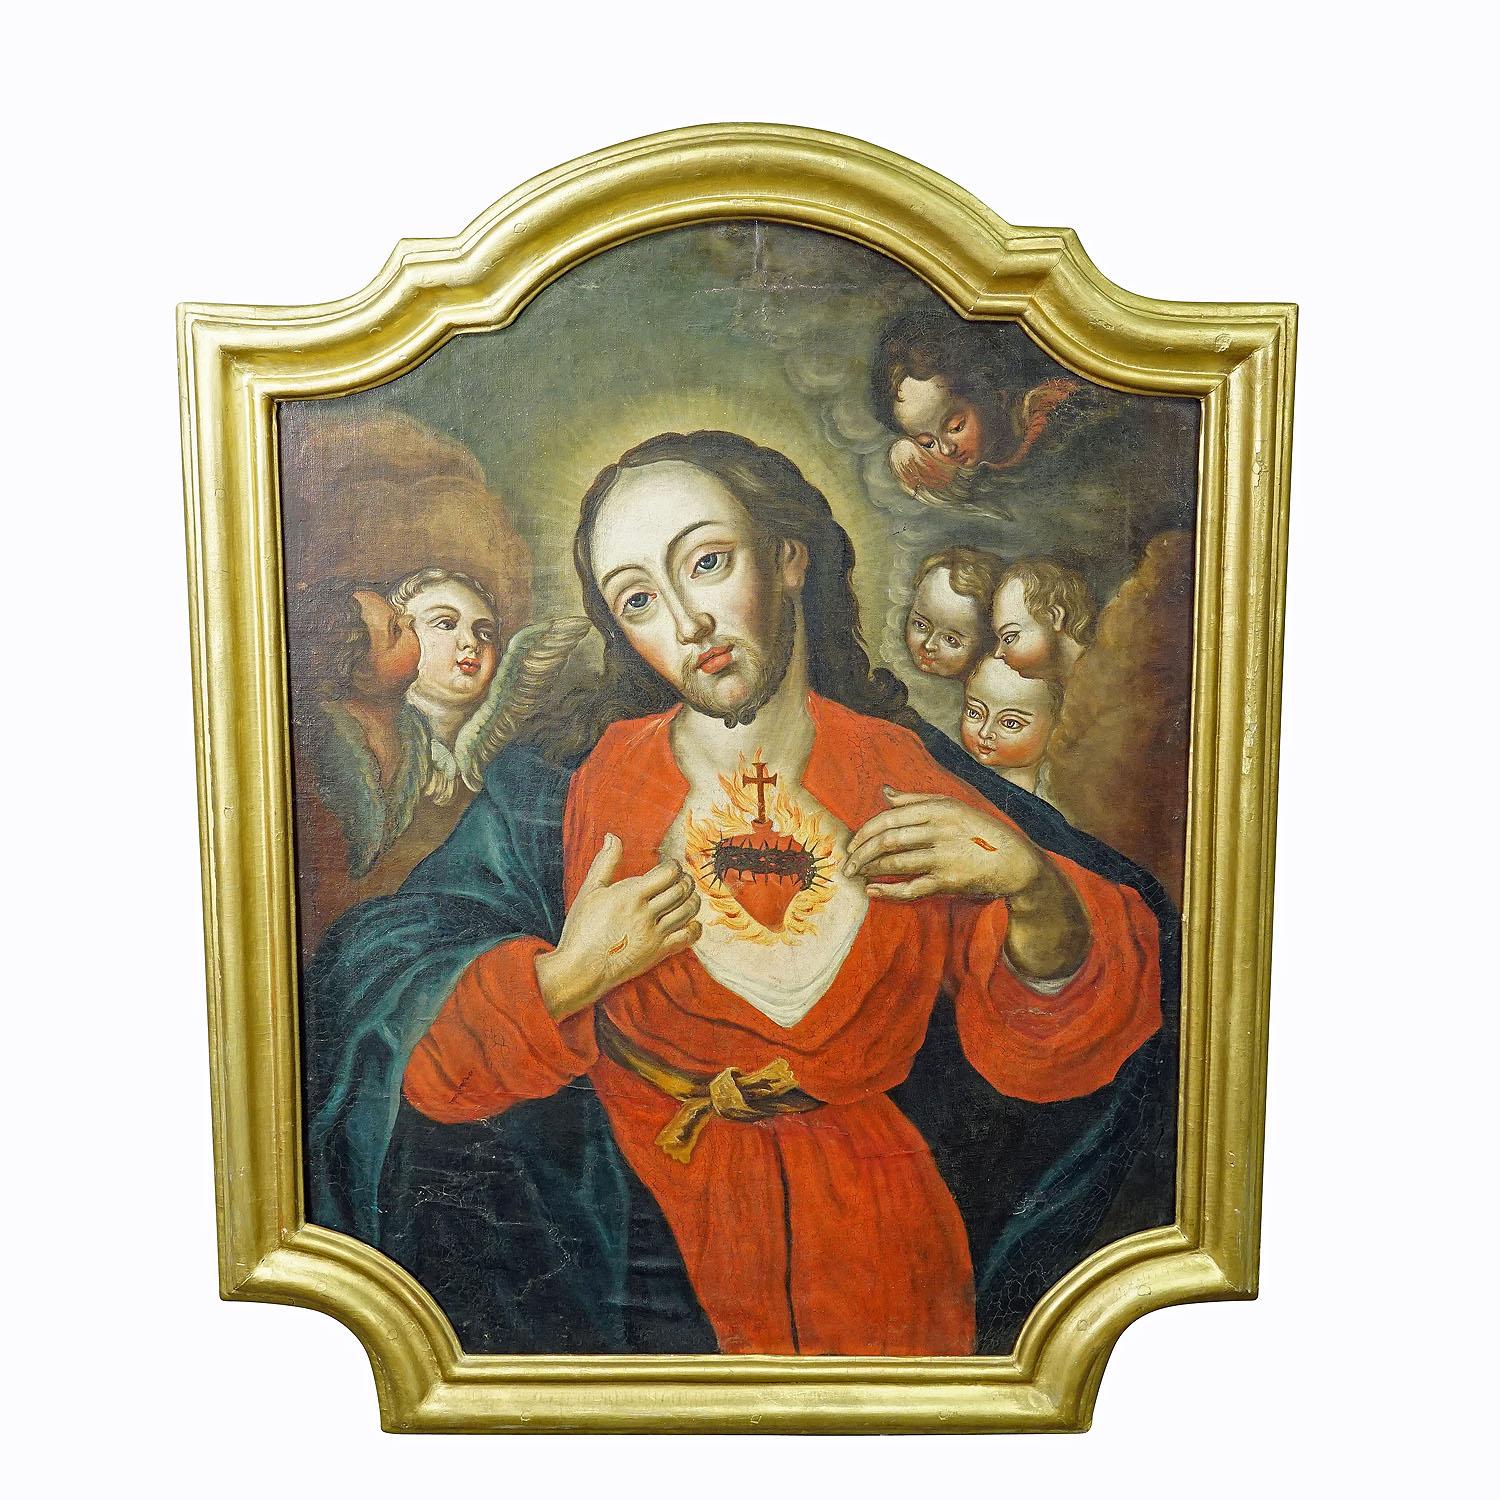 Le Sacré-Cœur de Jésus, peinture à l'huile sur toile 18e siècle

Peinture à l'huile ancienne représentant le cœur sacré de Jésus. Huile sur toile avec des couleurs pastel. Le symbolisme de cette représentation est que le cœur transpercé du crucifié